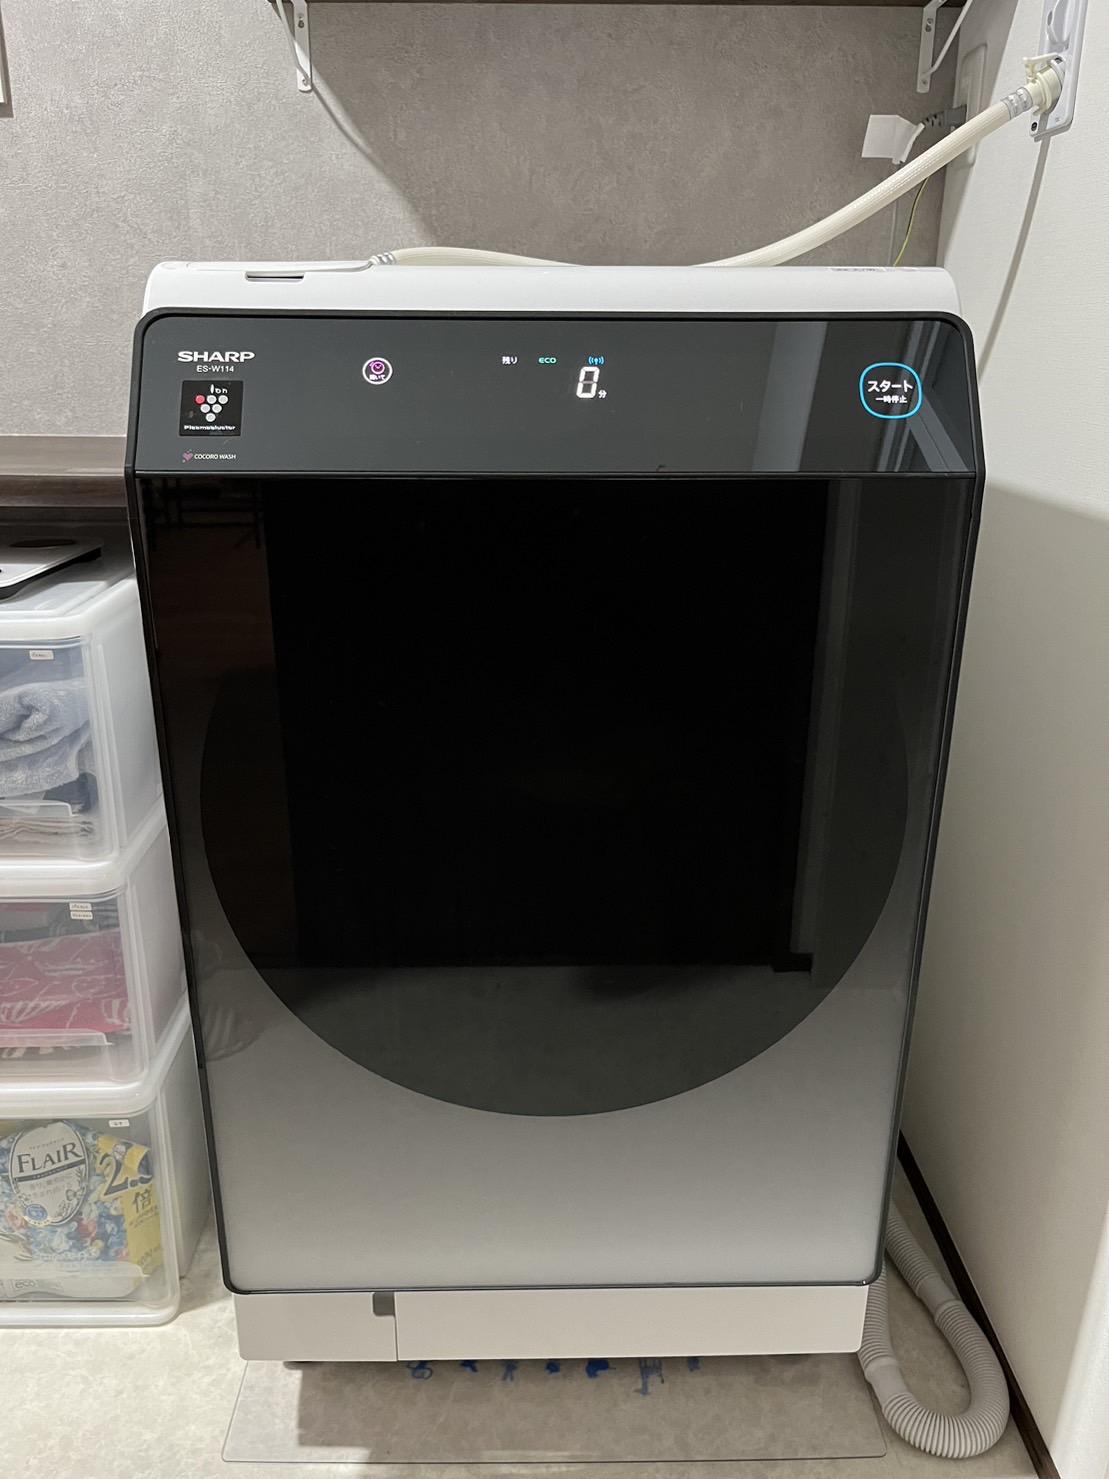 【口コミ&レビュー ES-W114】シャープ ドラム式洗濯乾燥機を旧型 